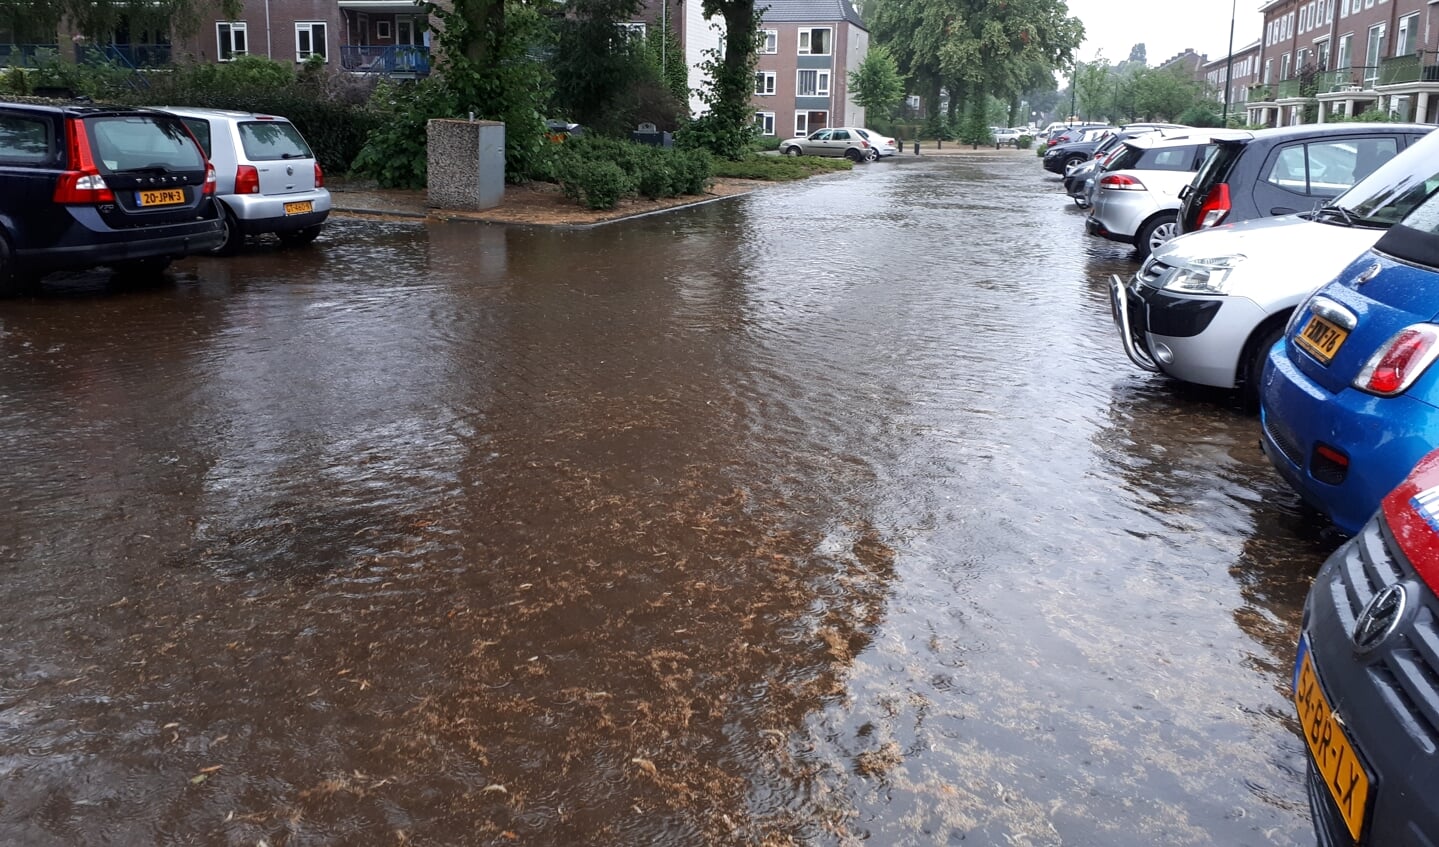 Plutolaan in Bilthoven veranderd in zwembad. (foto Janny Smits) 